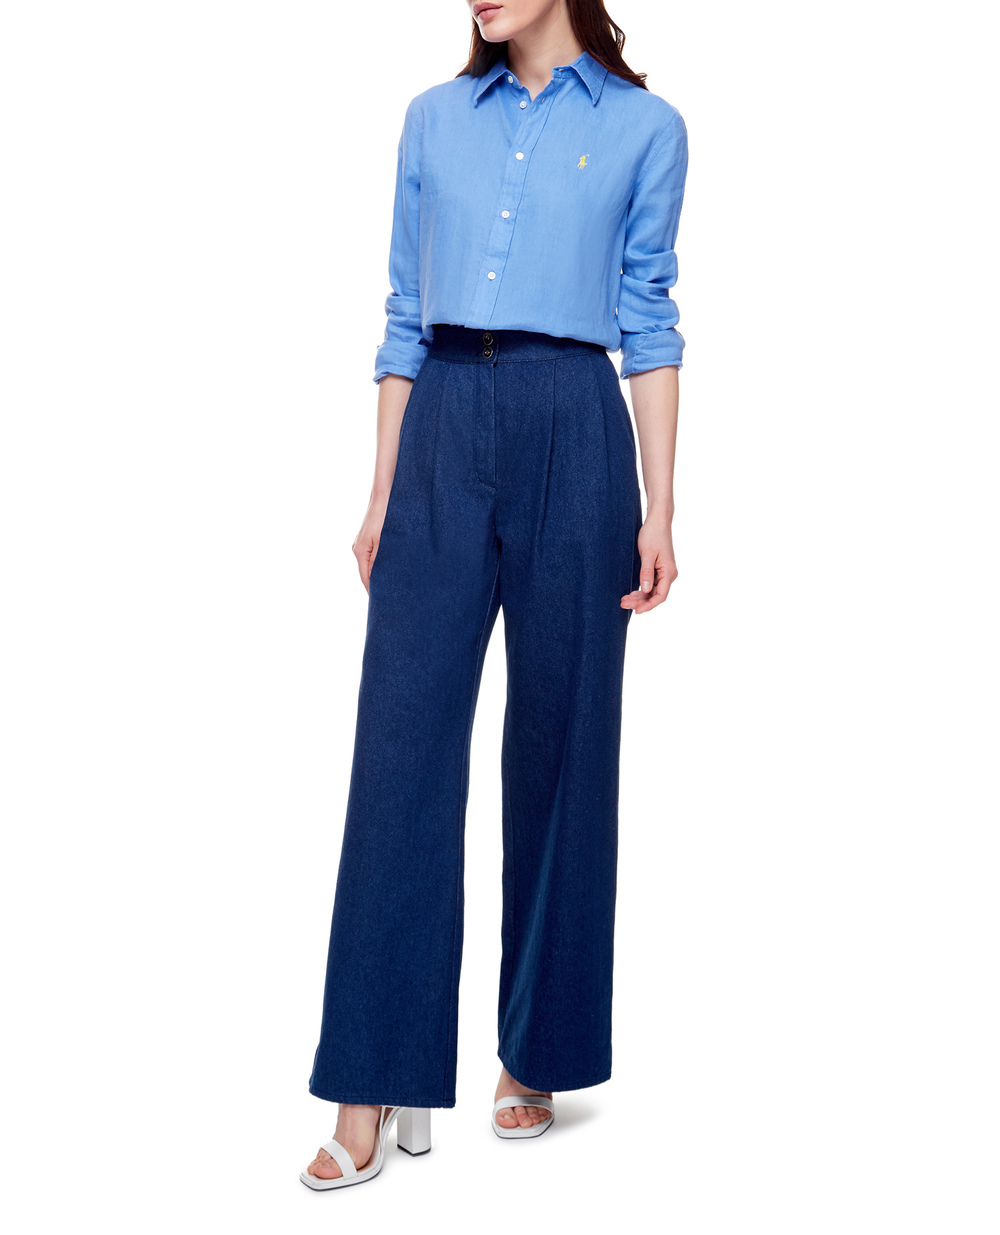 Льняная рубашка Polo Ralph Lauren 211827658010, синий цвет • Купить в интернет-магазине Kameron